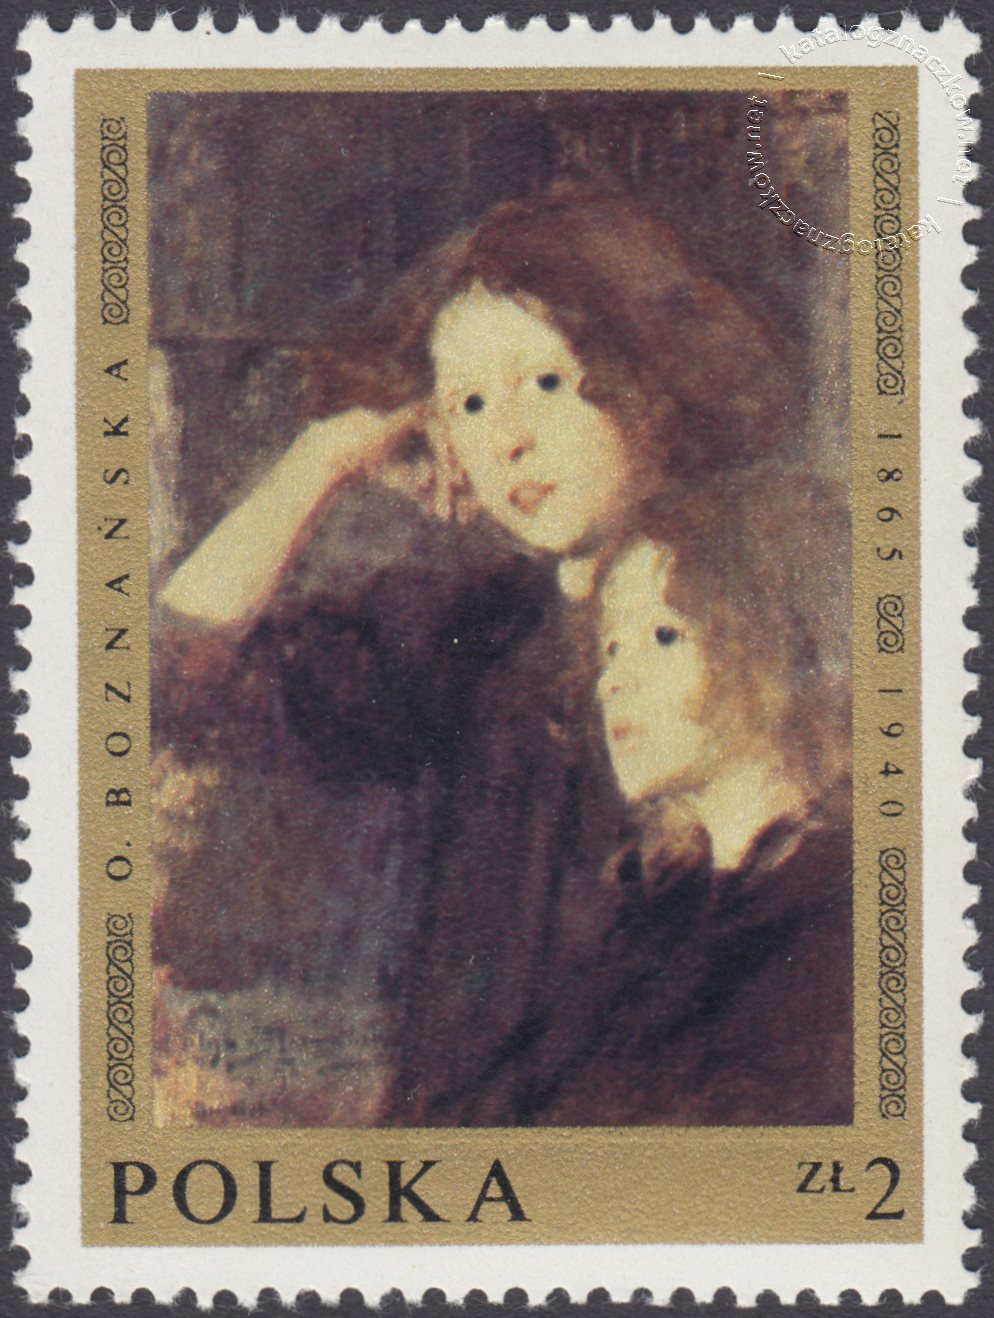 Malarstwo polskie znaczek nr 1797